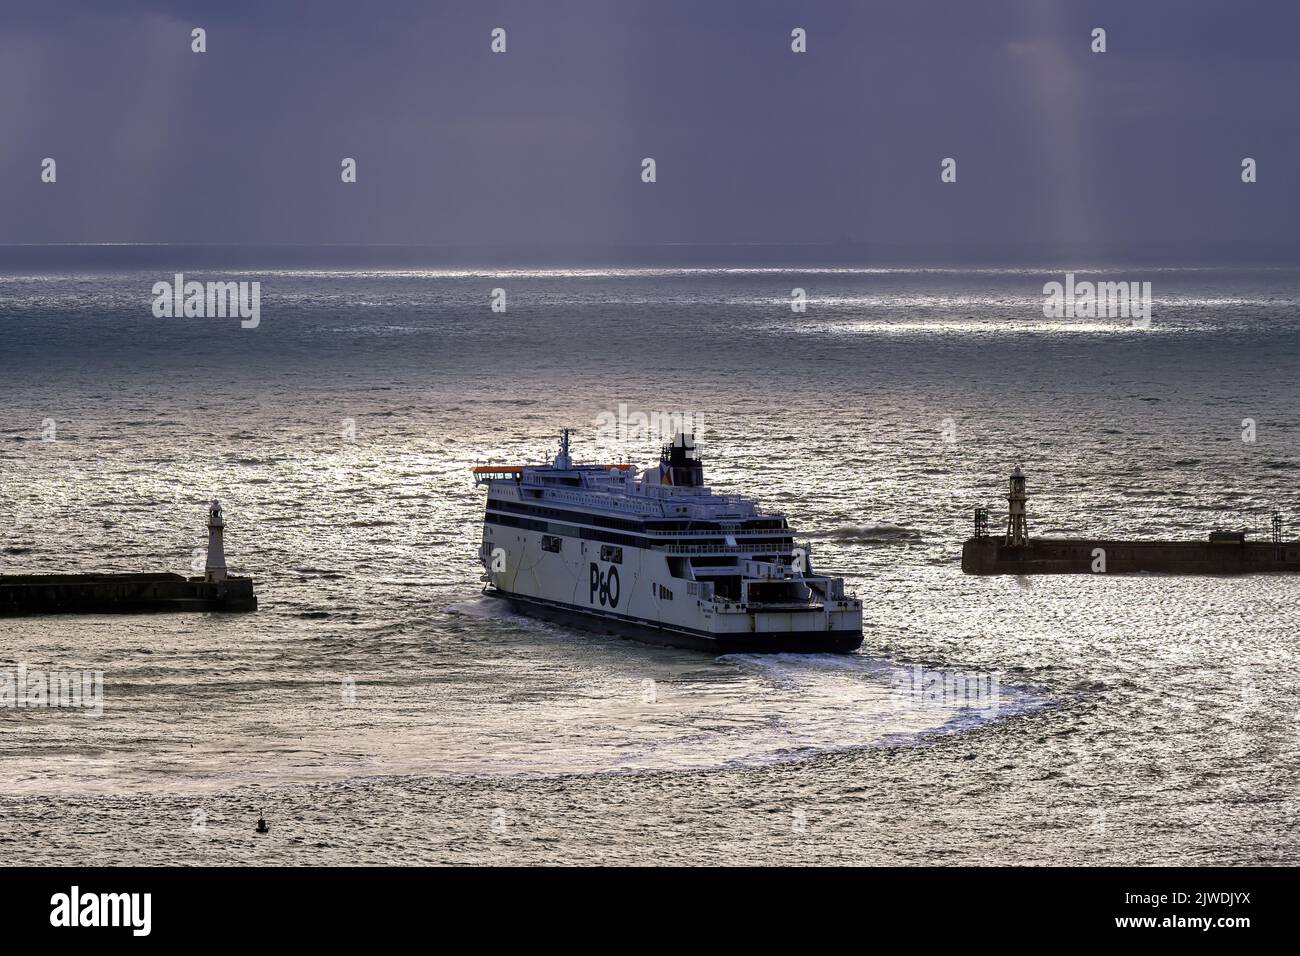 Le ferry Cross-Channel Spirit of Britain (P&O Ferries) quitte le port de Douvres par l'entrée ouest. Banque D'Images